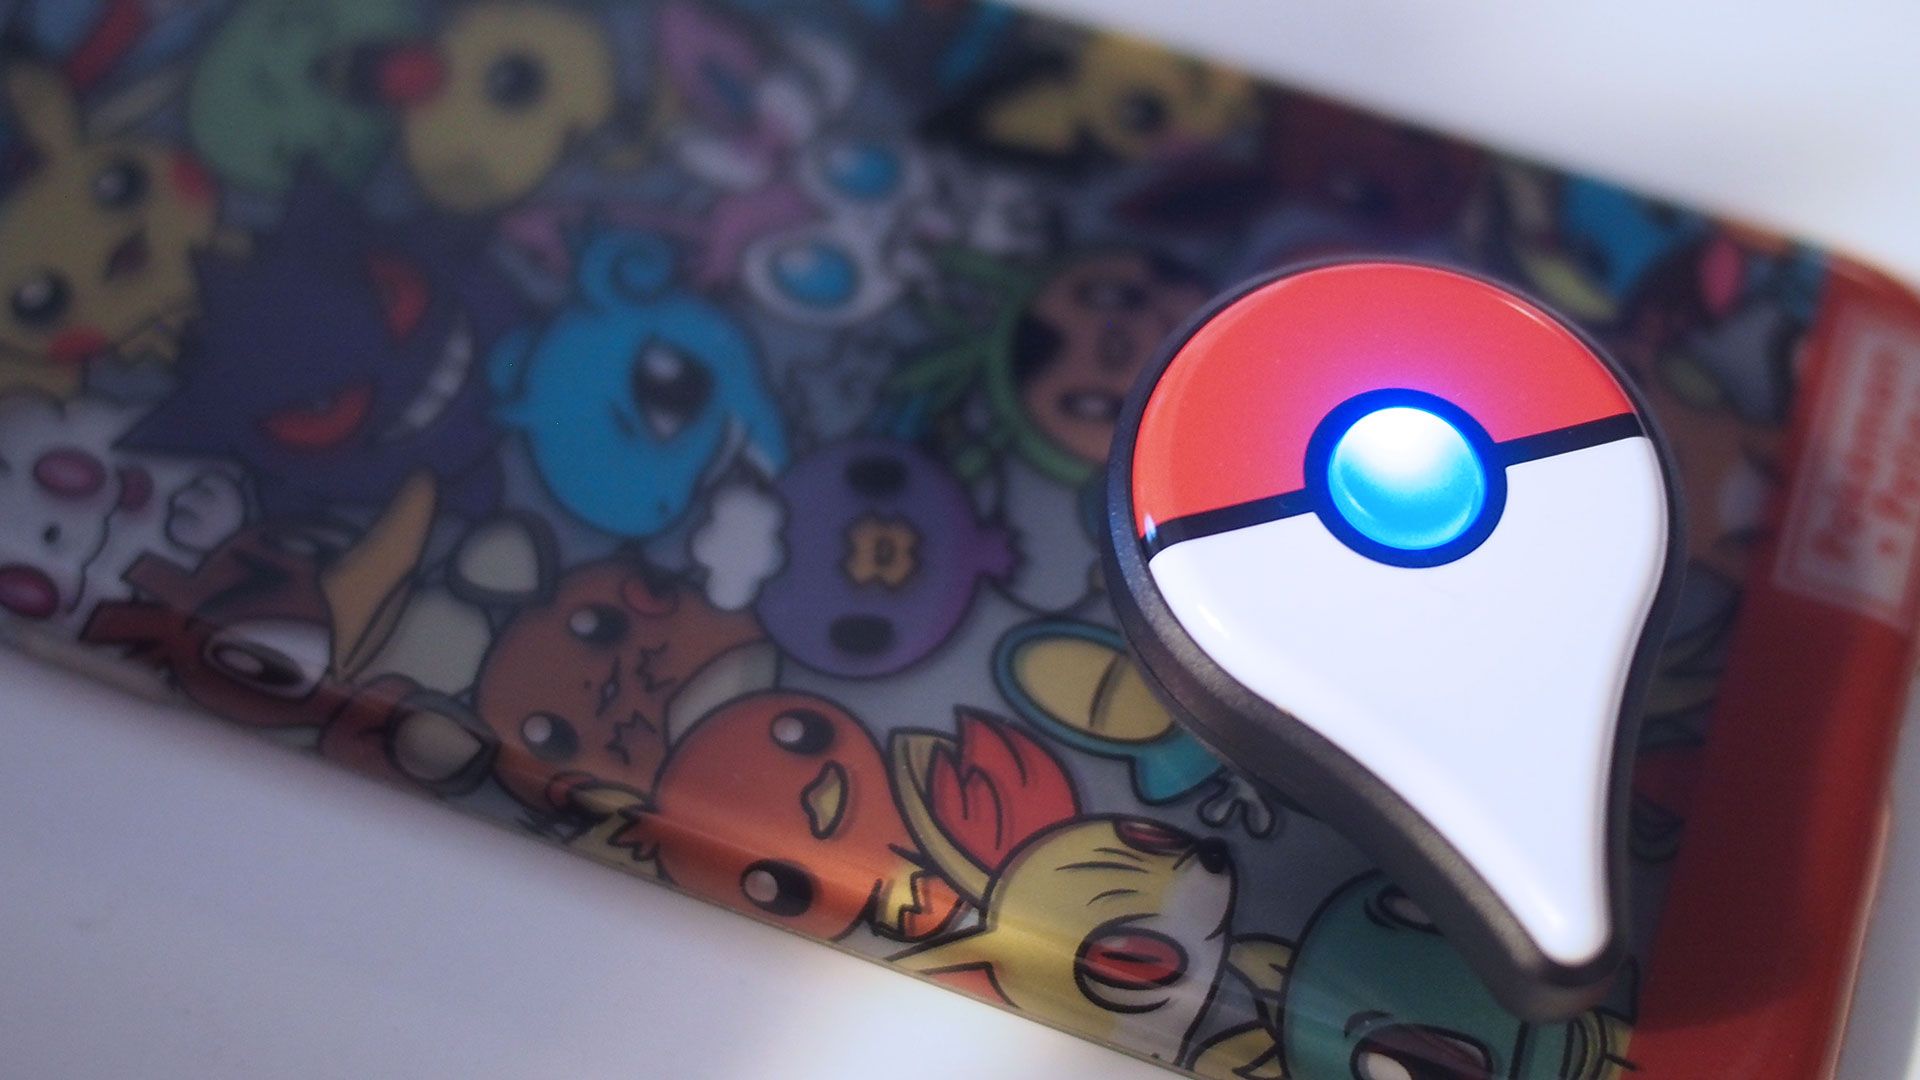 Pokemon Go Plus Review: Should You Buy it?